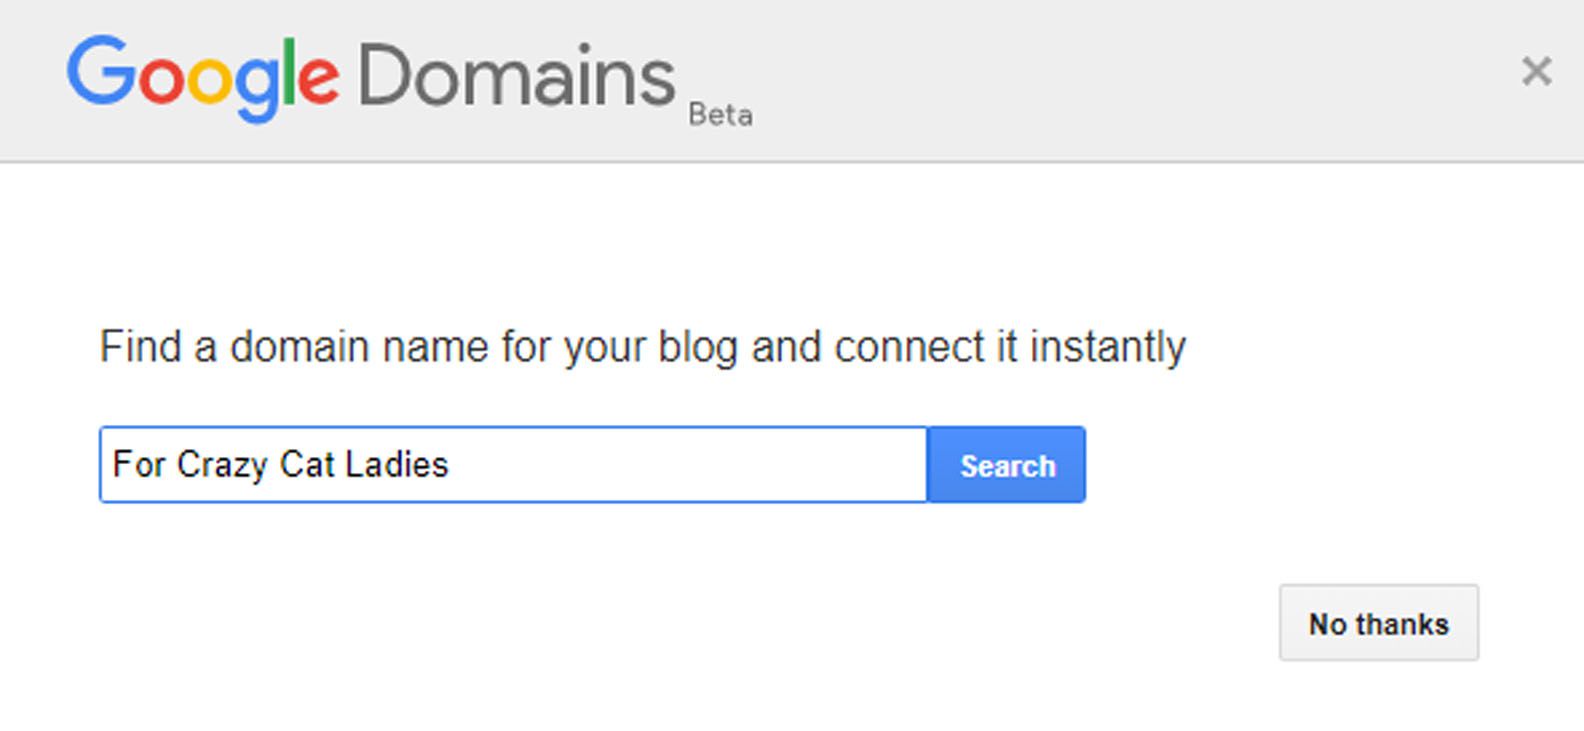 Interface do Google Domains no Blogger